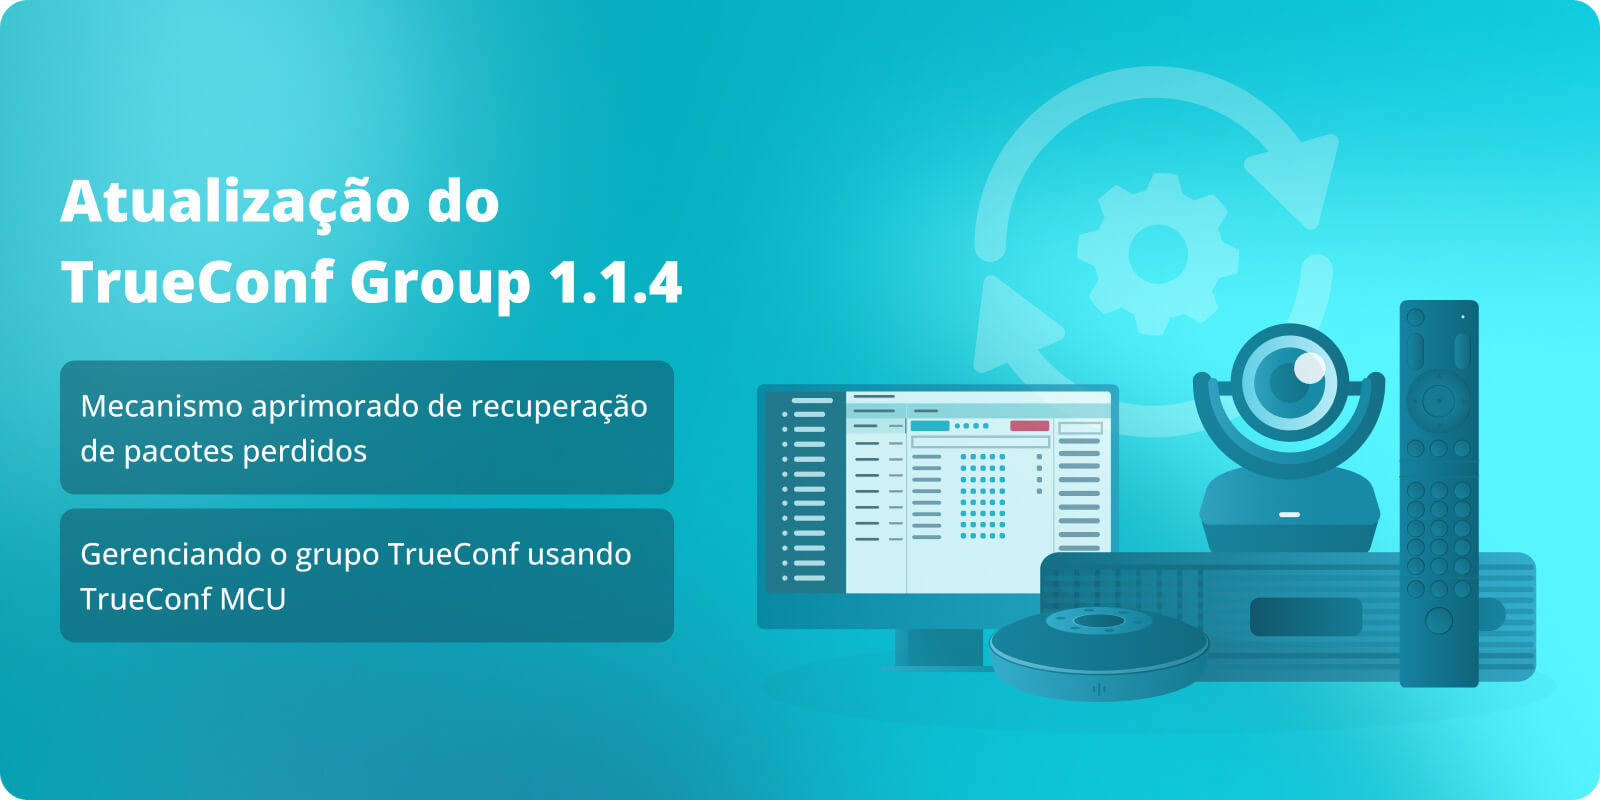 TrueConf Group 1.1.4: mecanismo de recuperação aprimorado para pacotes perdidos e integração com TrueConf MCU 2